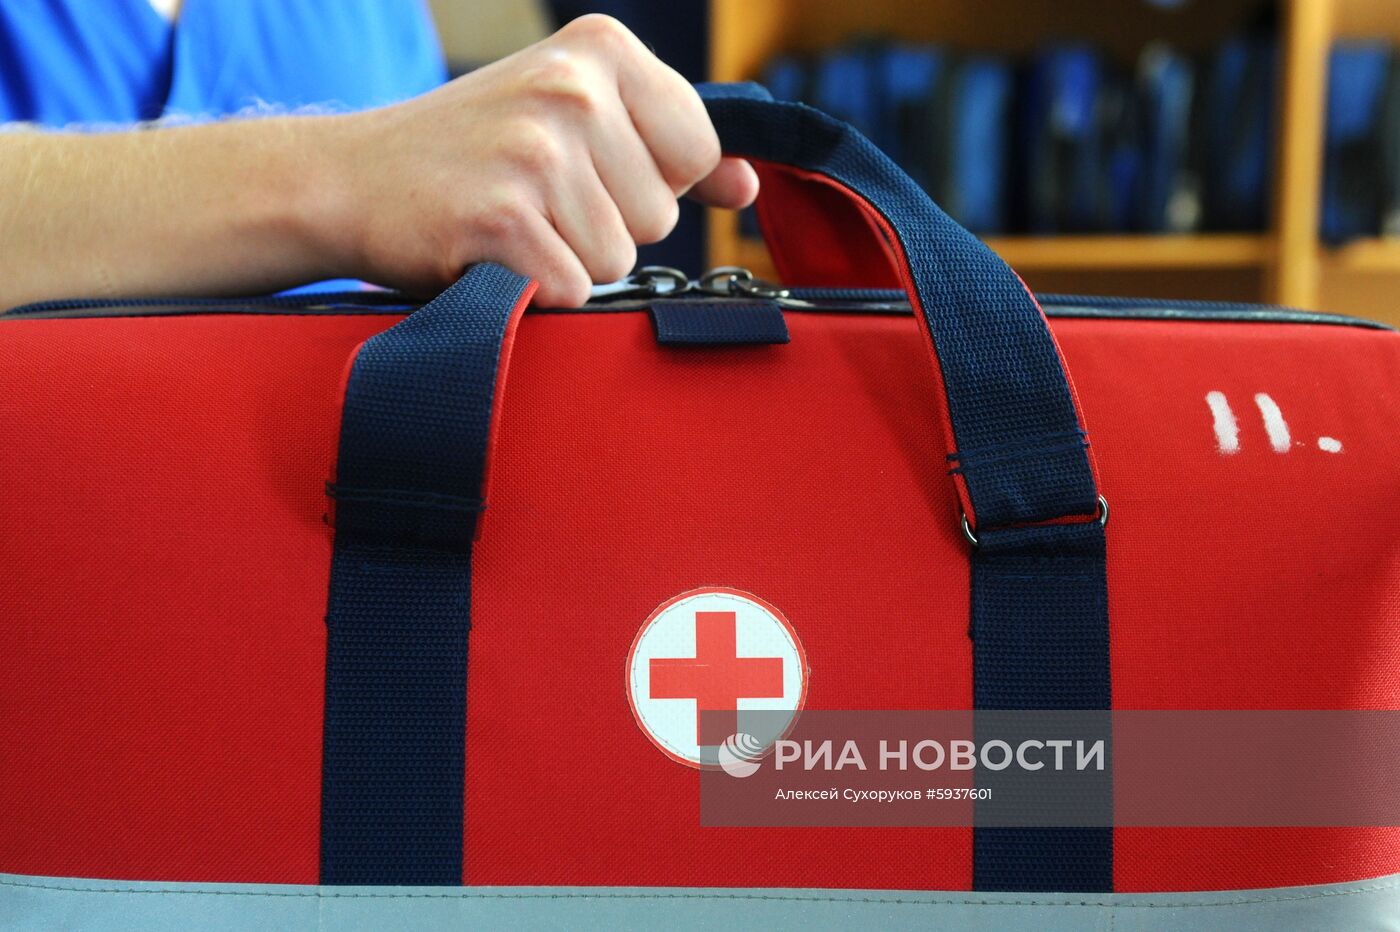 Работа скорой помощи и Центра медицины катастроф в Тамбове